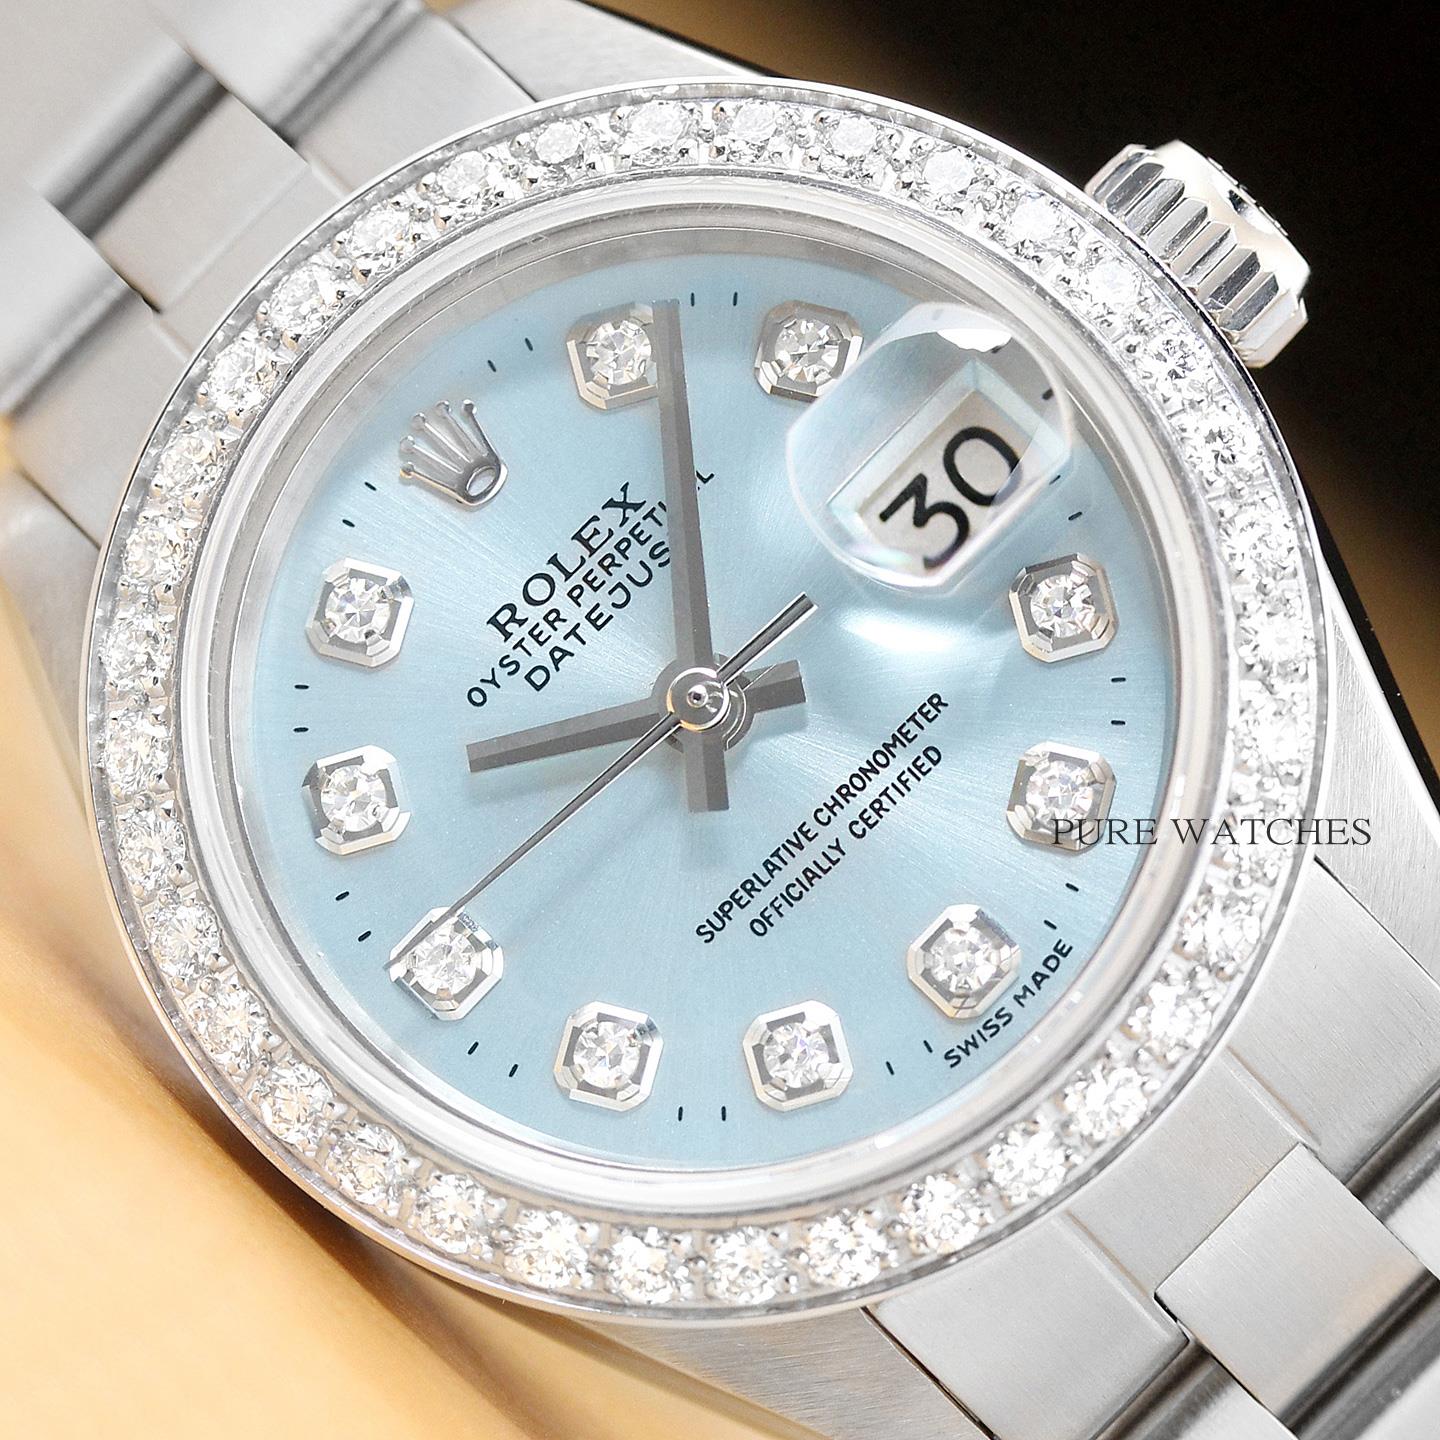 Original Rolex Damen Datejust Eisblau Diamant Uhr Mit Rolex Auster Band Ebay